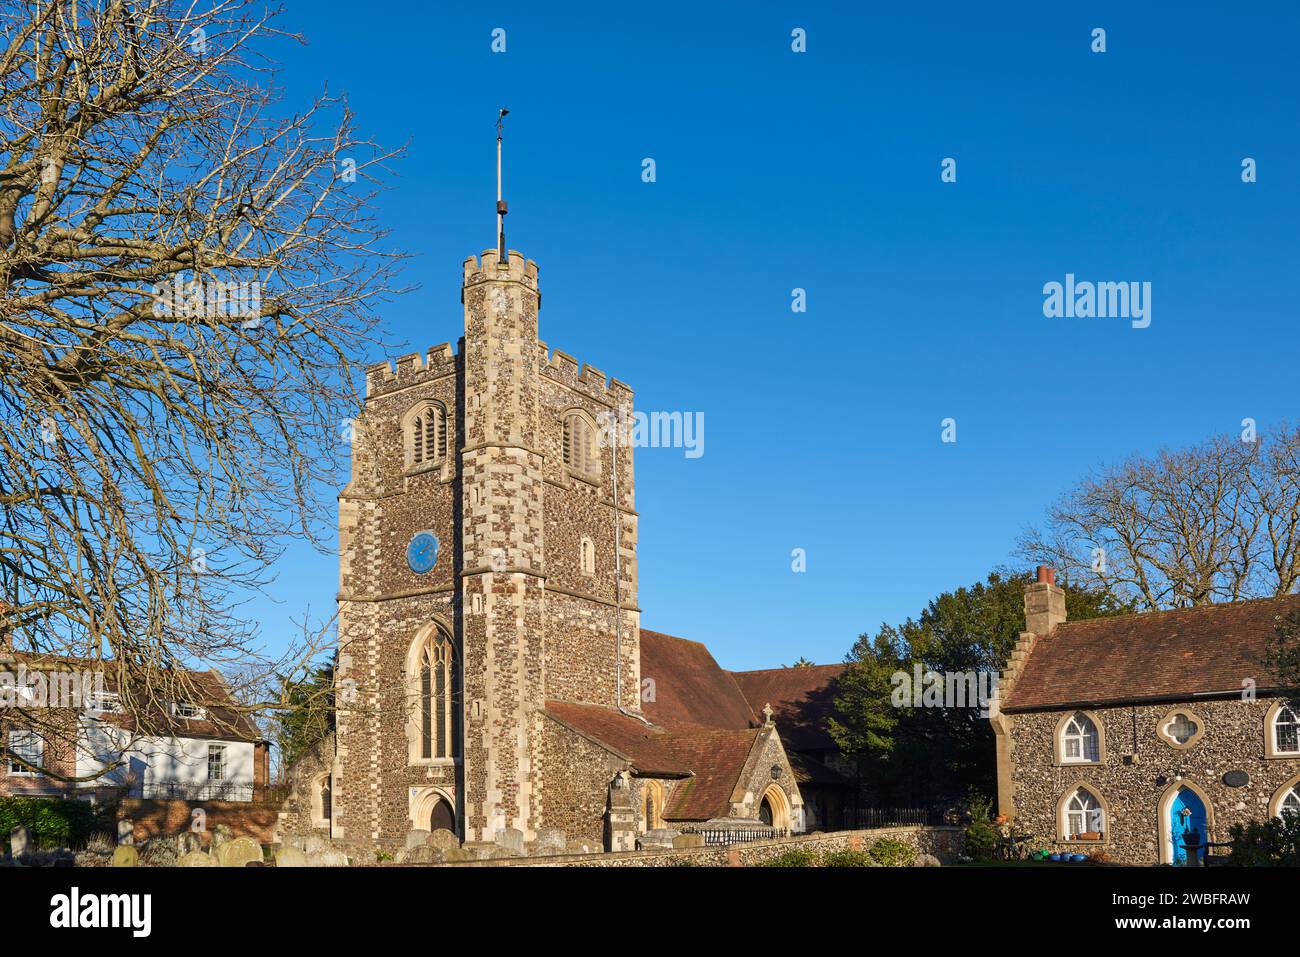 L'ancien village de Monken Hadley près de Barnet, Grand Londres Royaume-Uni, avec l'église historique de St Mary la Vierge, en hiver Banque D'Images